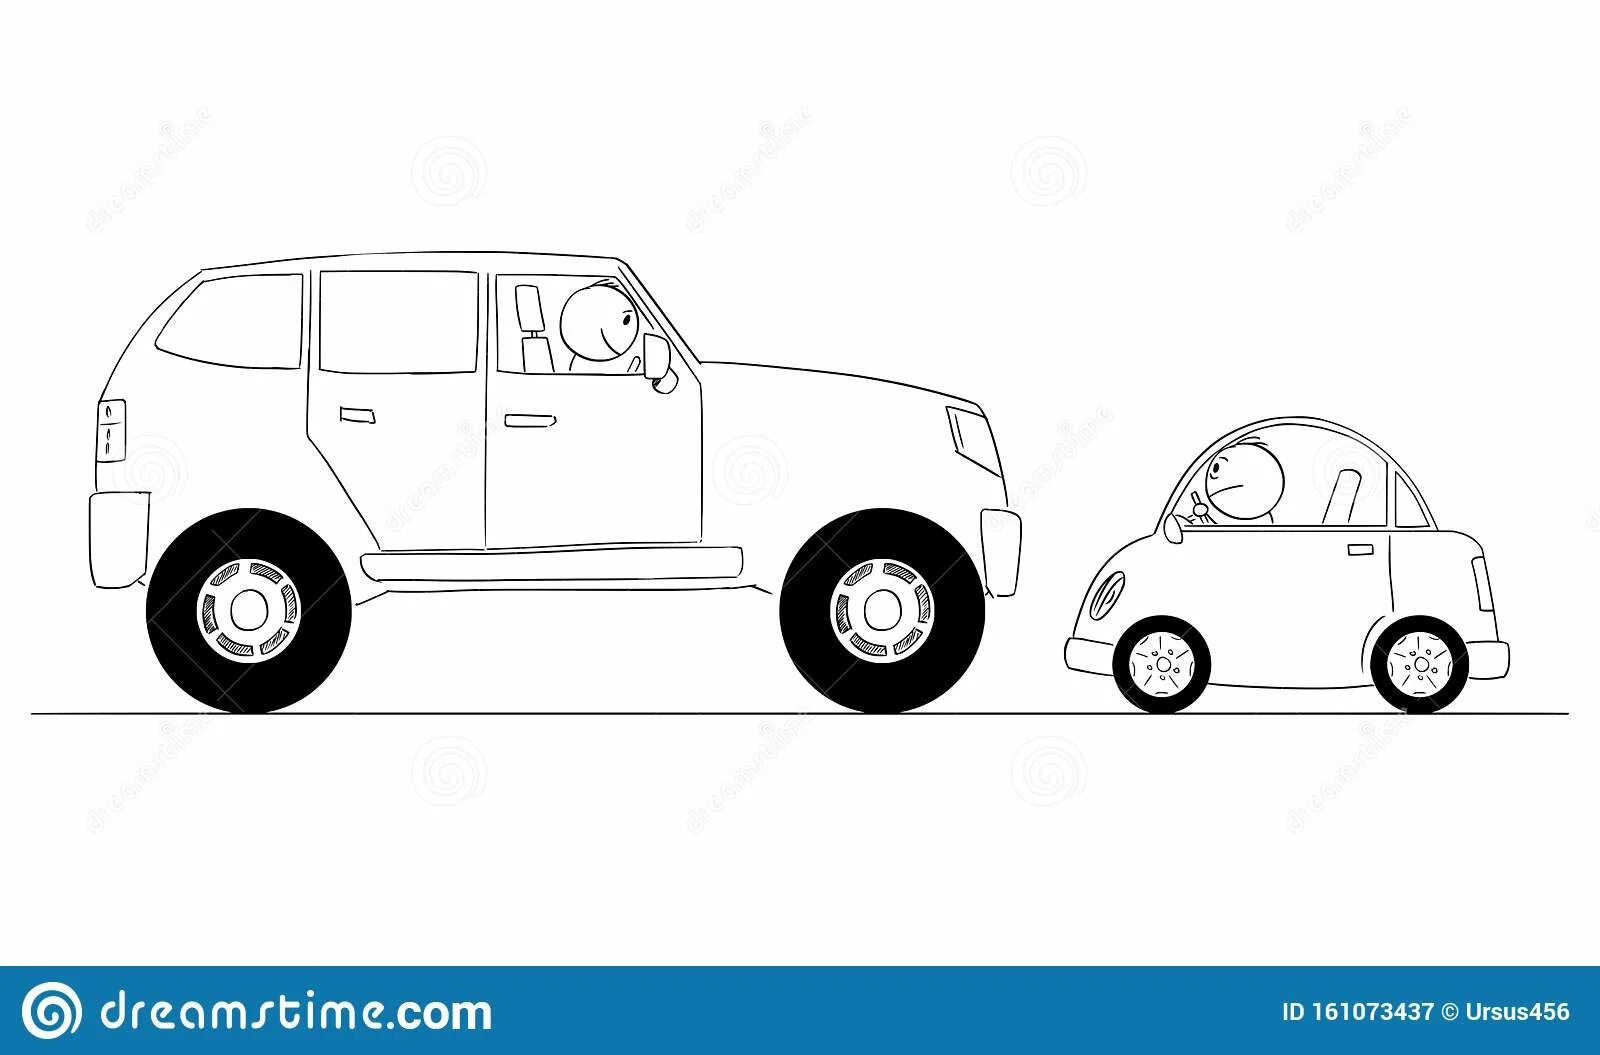 My car is bigger. Машина рисунок для детей. Big and small cars. ETK 900 big and small cars. Сидячая машина рисунок.